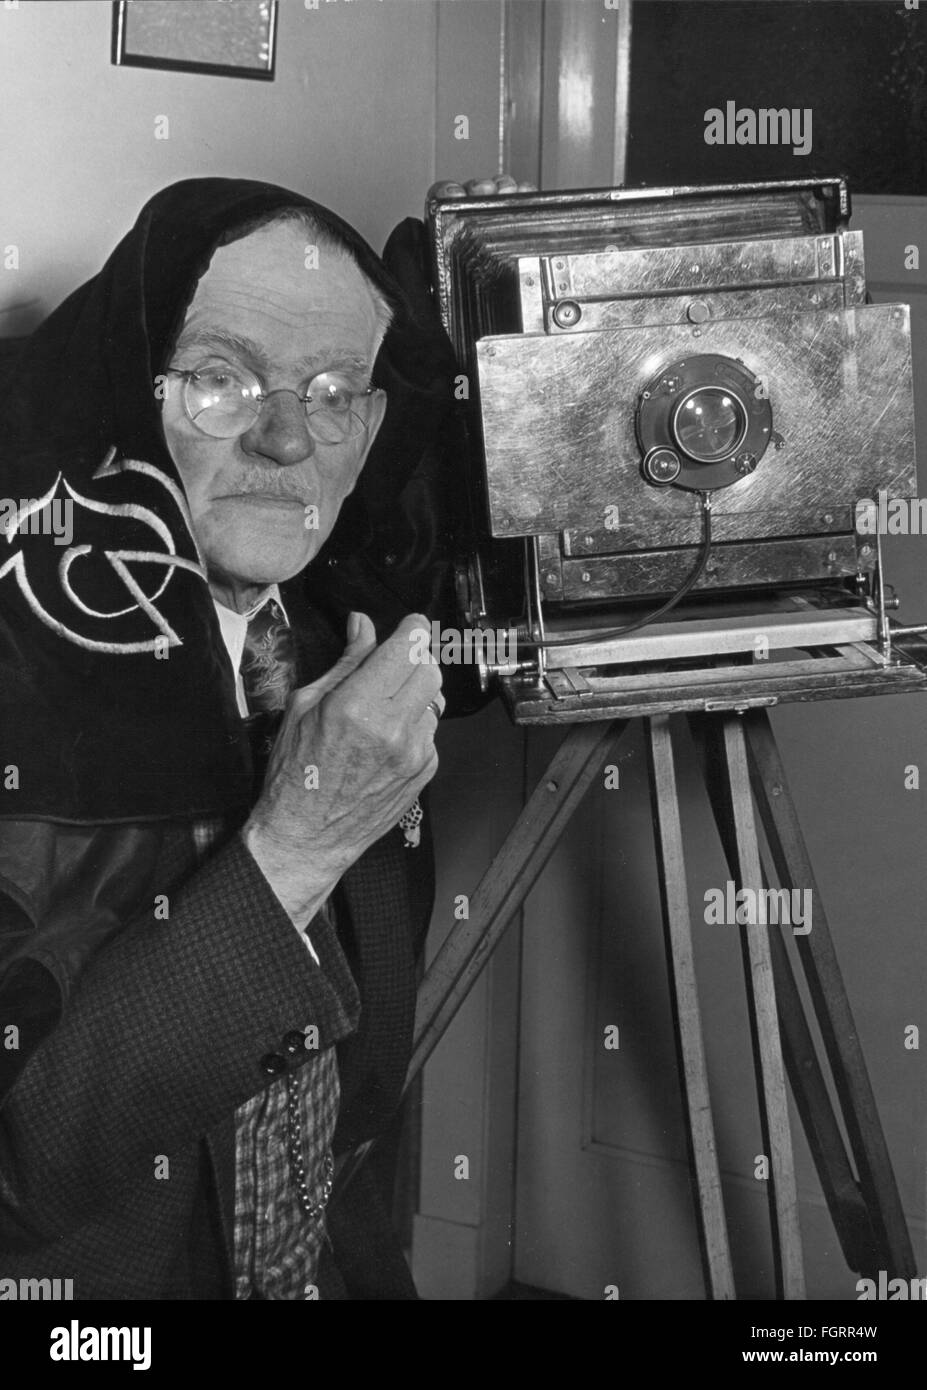 Fotografia, fotografo, Johannes Jacobsen con fotocamera dal 1900 al 1910,  novembre / dicembre 1958, 19 ° secolo, 1950, 50, mezza lunghezza, occhiali,  occhiali, grilletto, trigger, fotocamera a soffietto, scattare una foto,  scattare